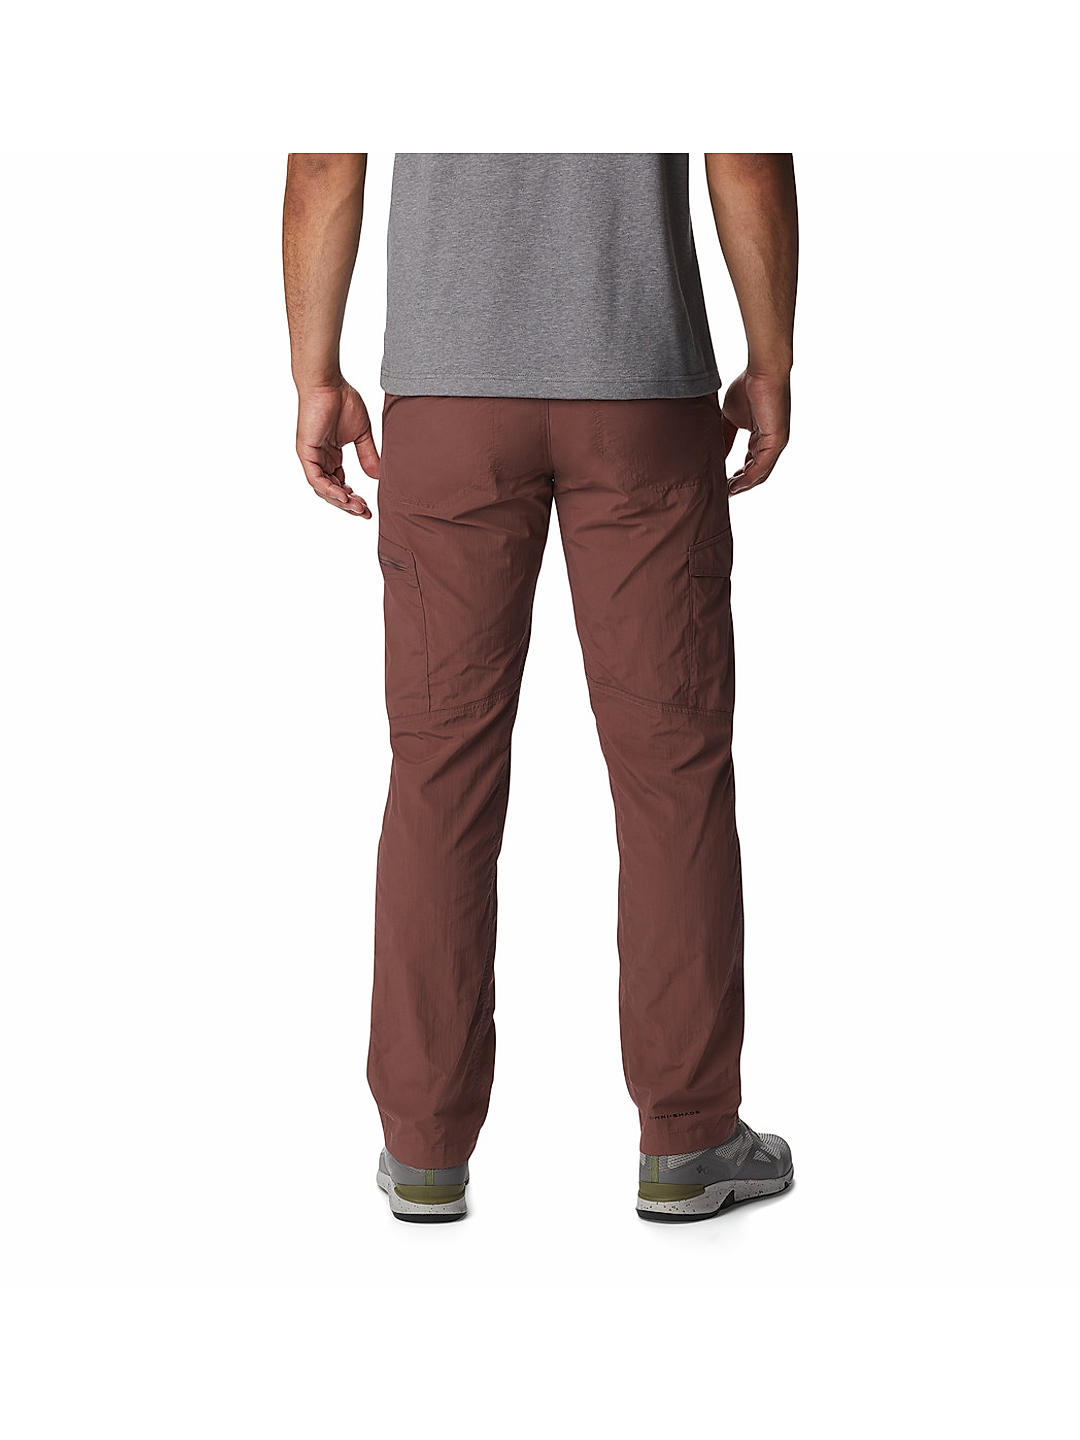 Unique Bargains Men's Striped Pants Skinny Fit Color Block Trousers -  Walmart.com